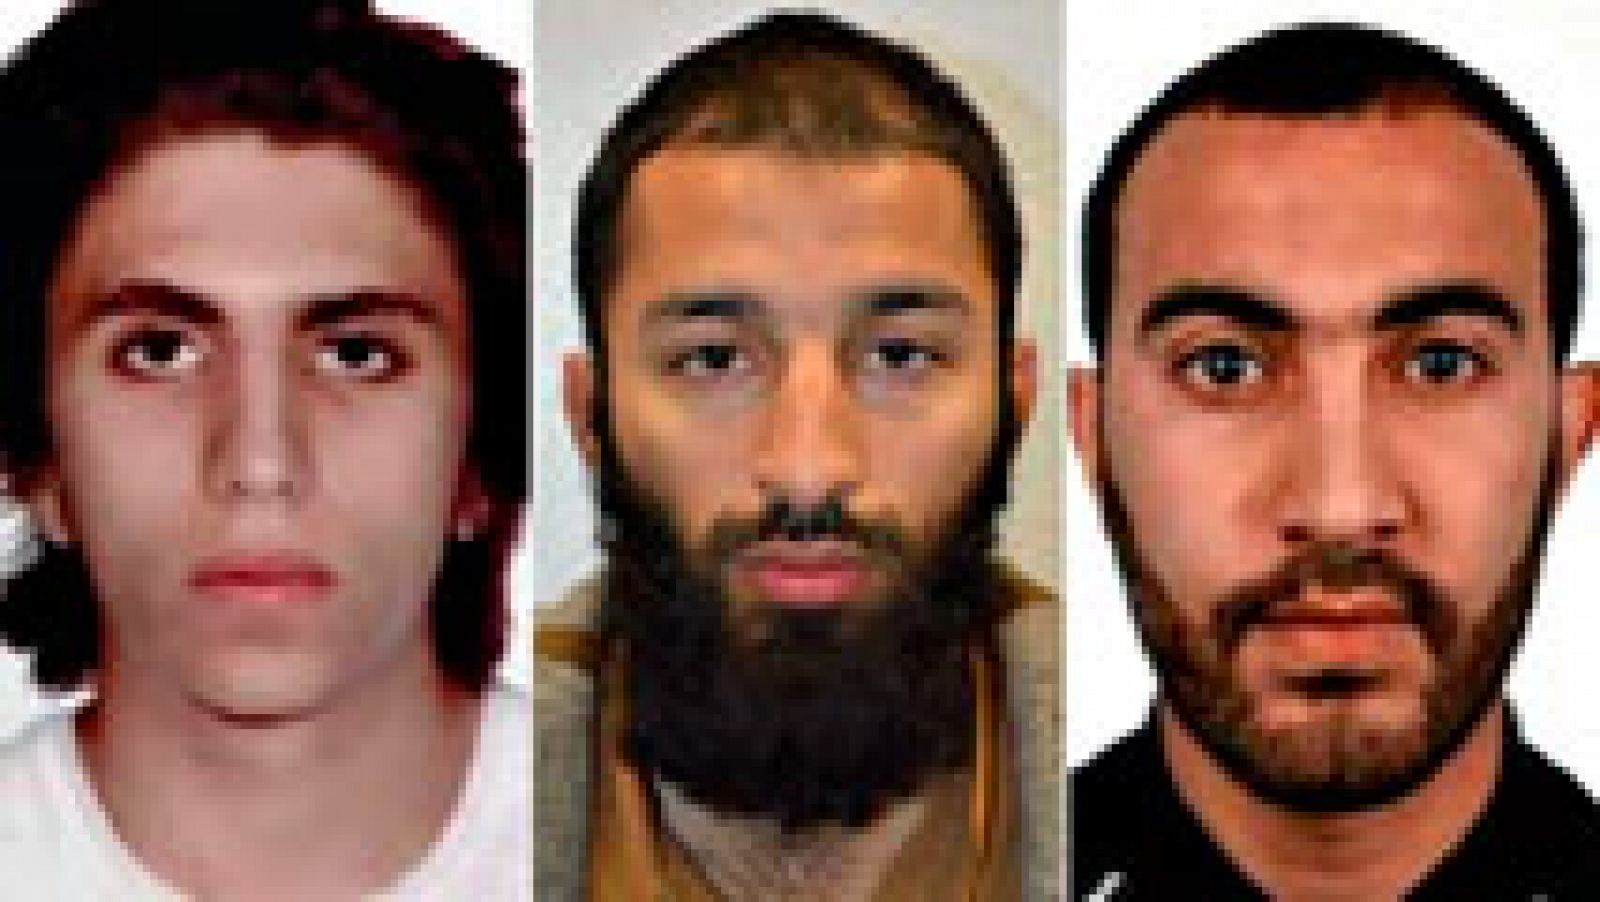 Identificado el tercer terrorista de Londres, Youssef Zaghba, de madre italiana y padre marroquí